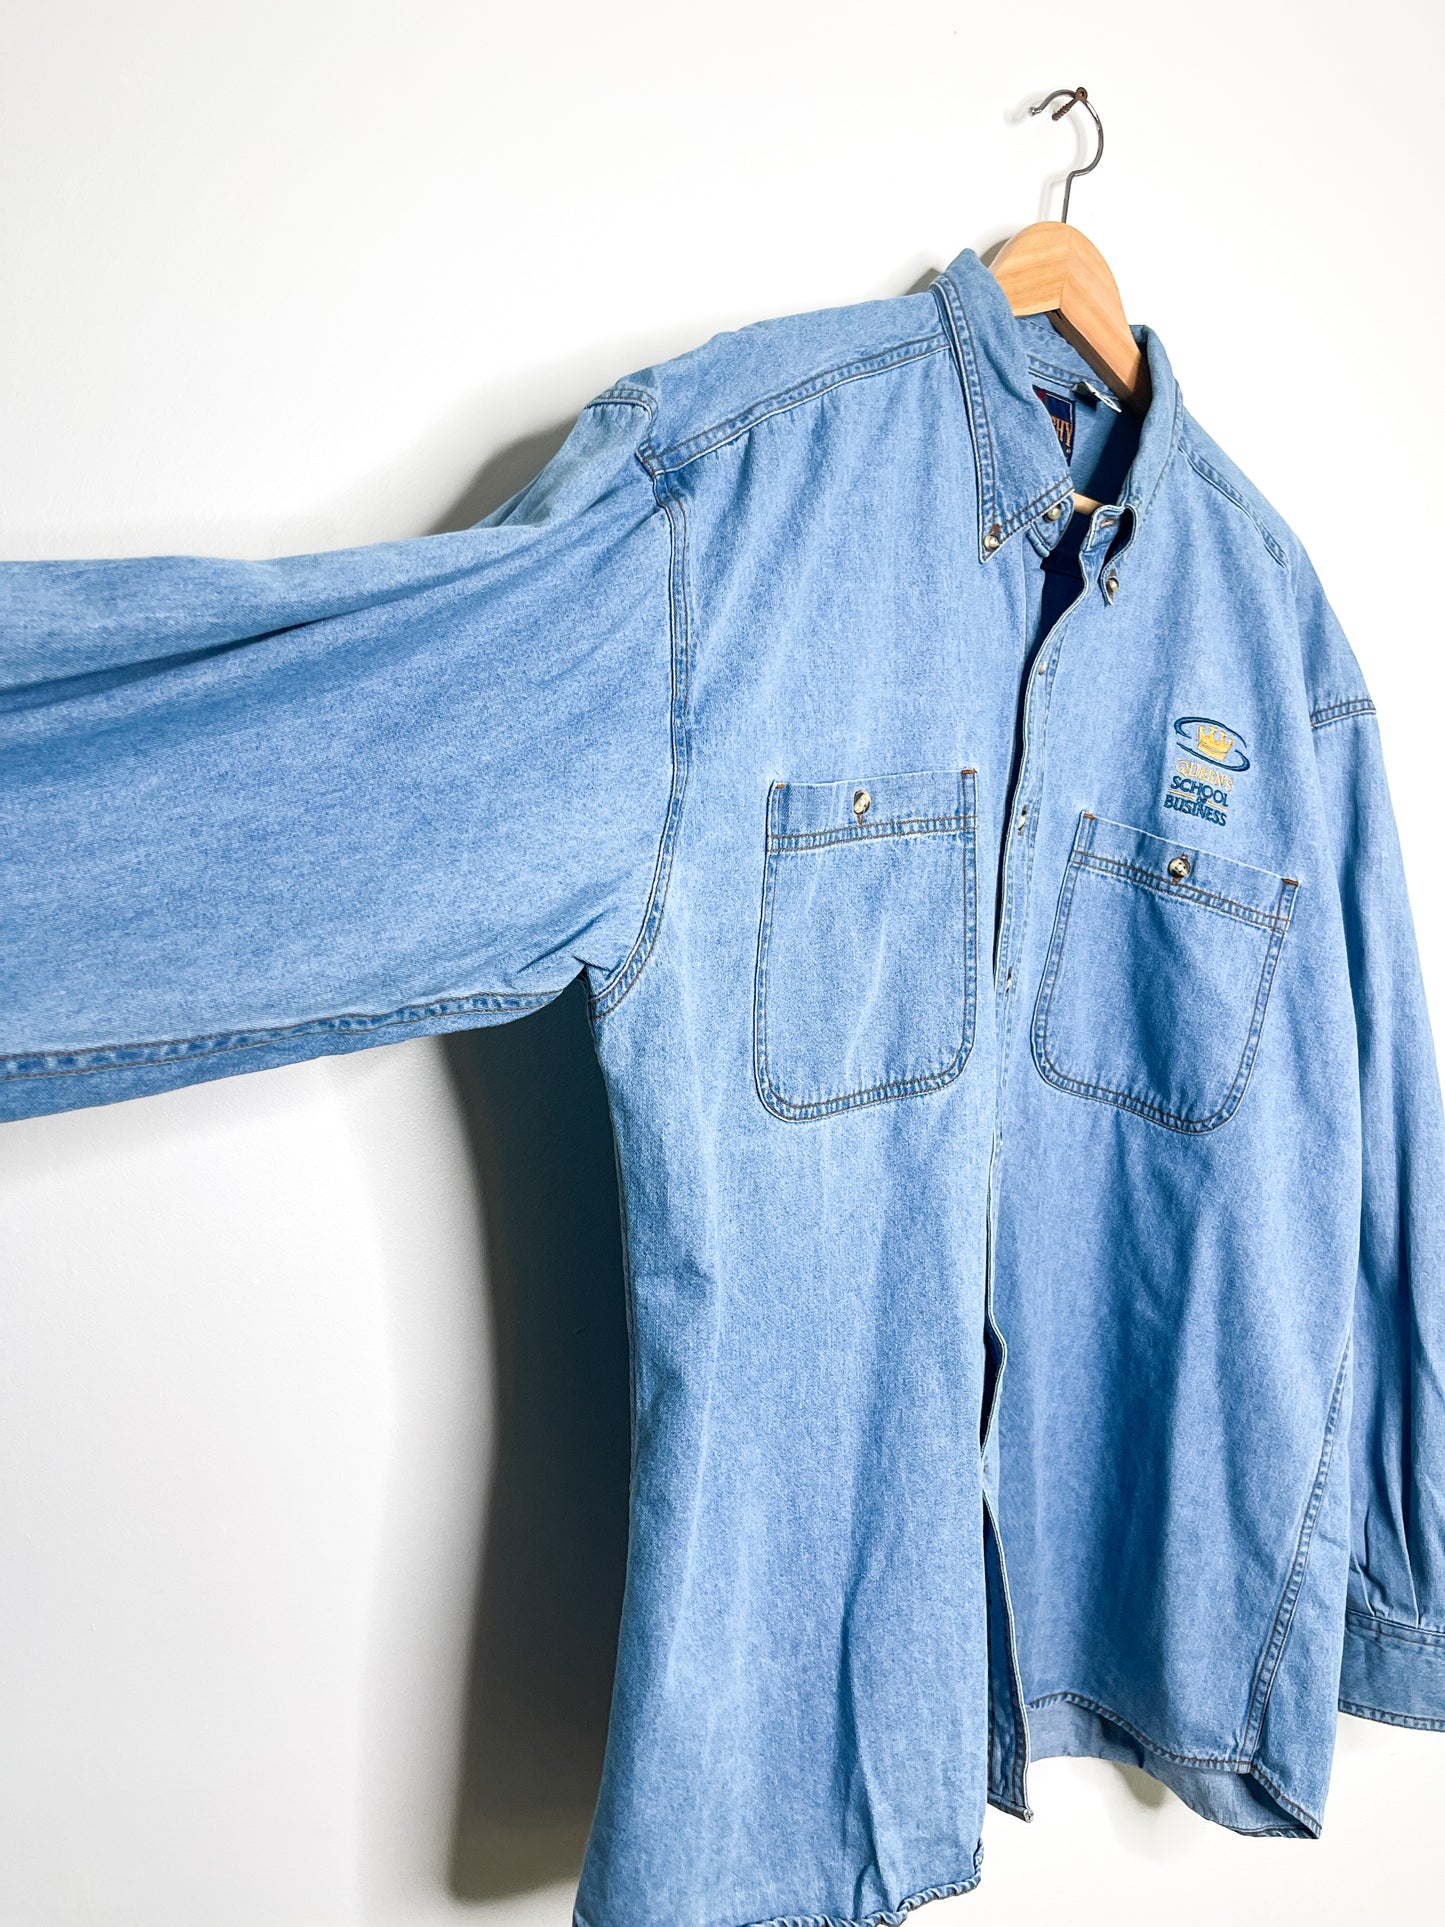 Vintage Queen's School of Business Denim Shirt| Denim shirt| Long sleeve Denim Shirt|